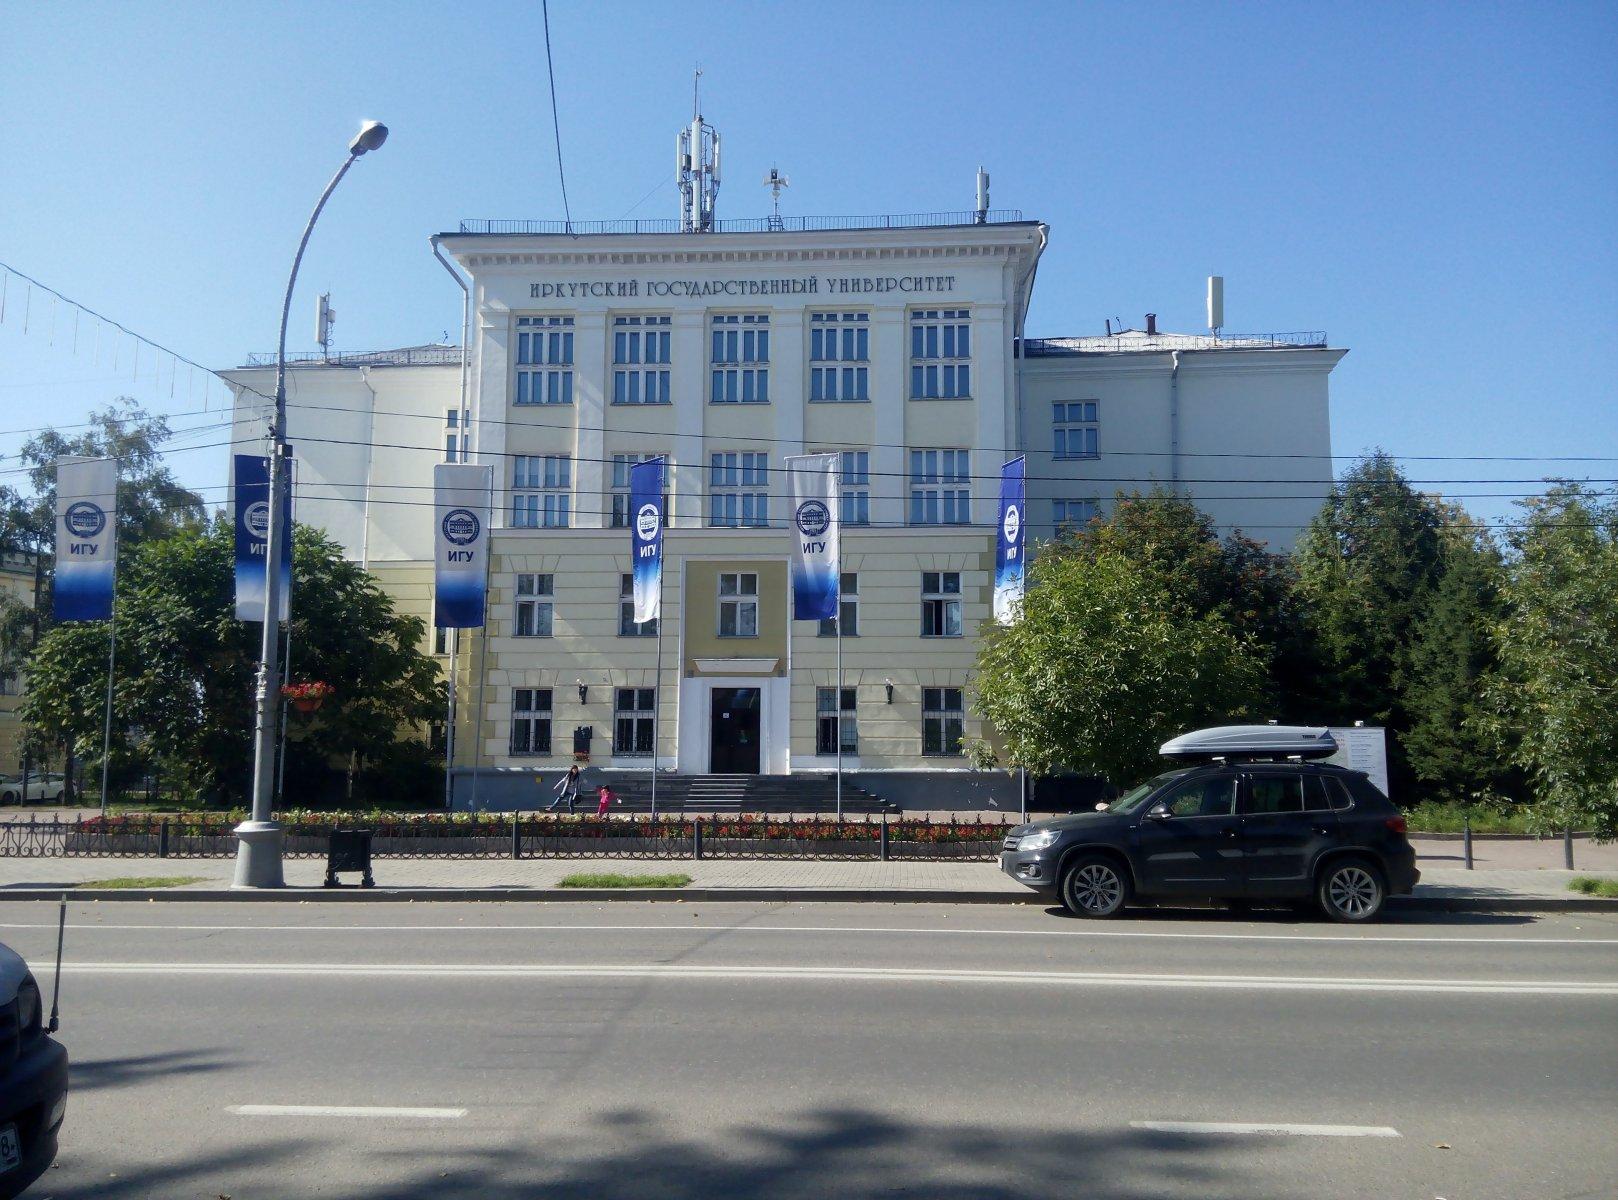 Иркутский государственный университет иркутск